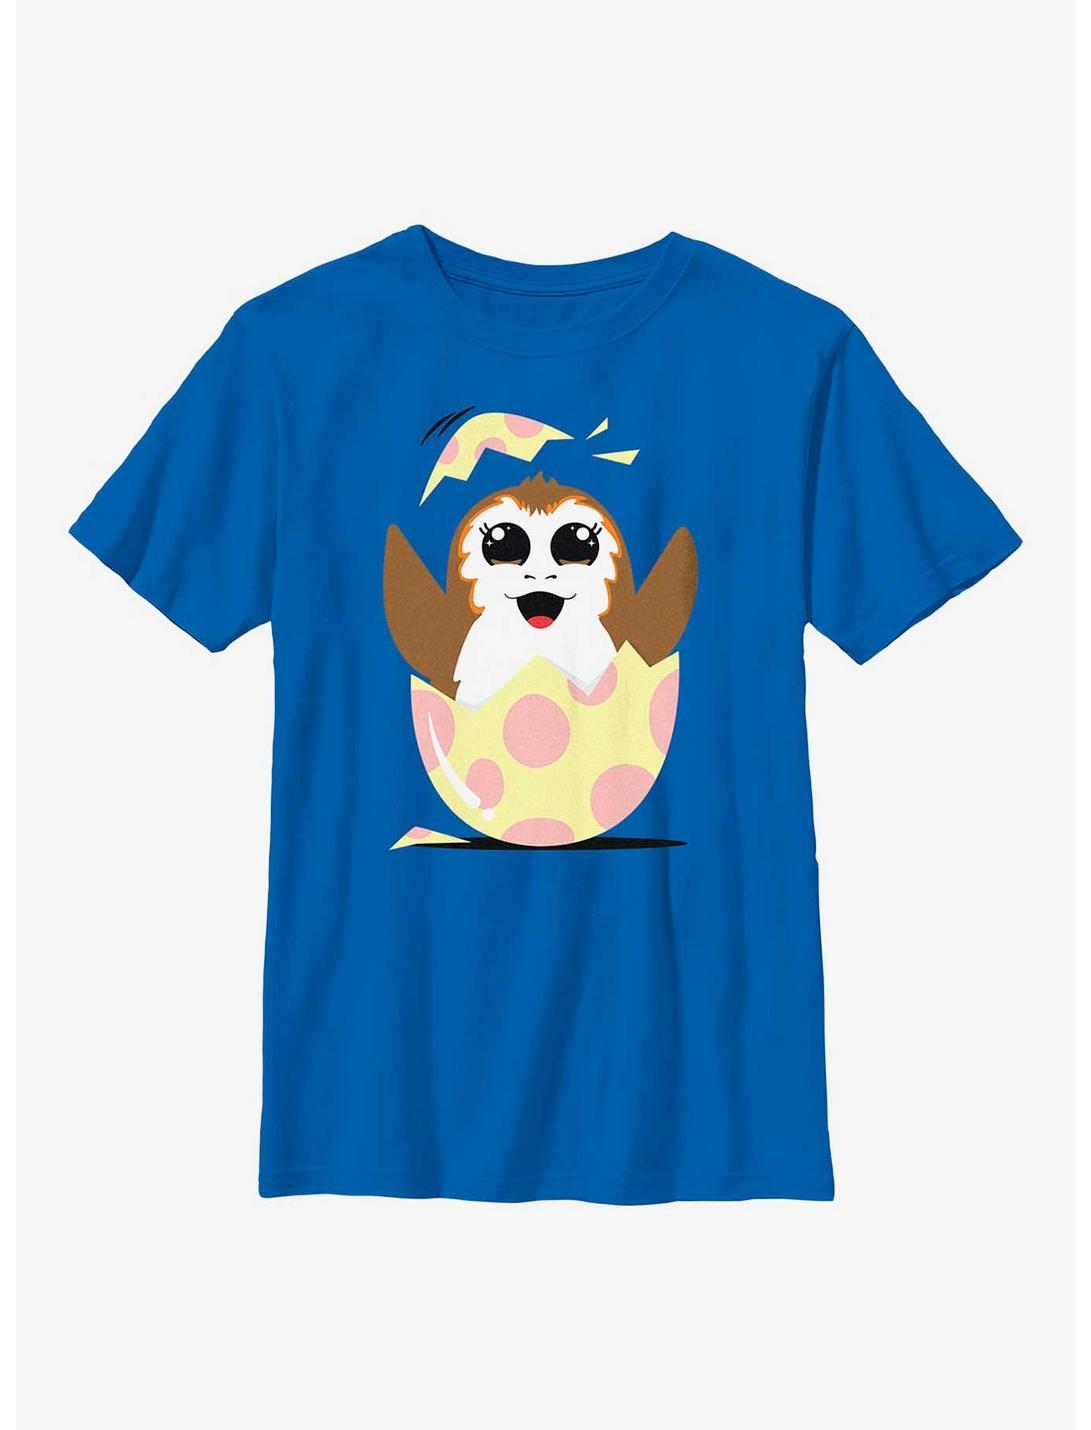 Star Wars Easter Egg Porg Youth T-Shirt, ROYAL, hi-res